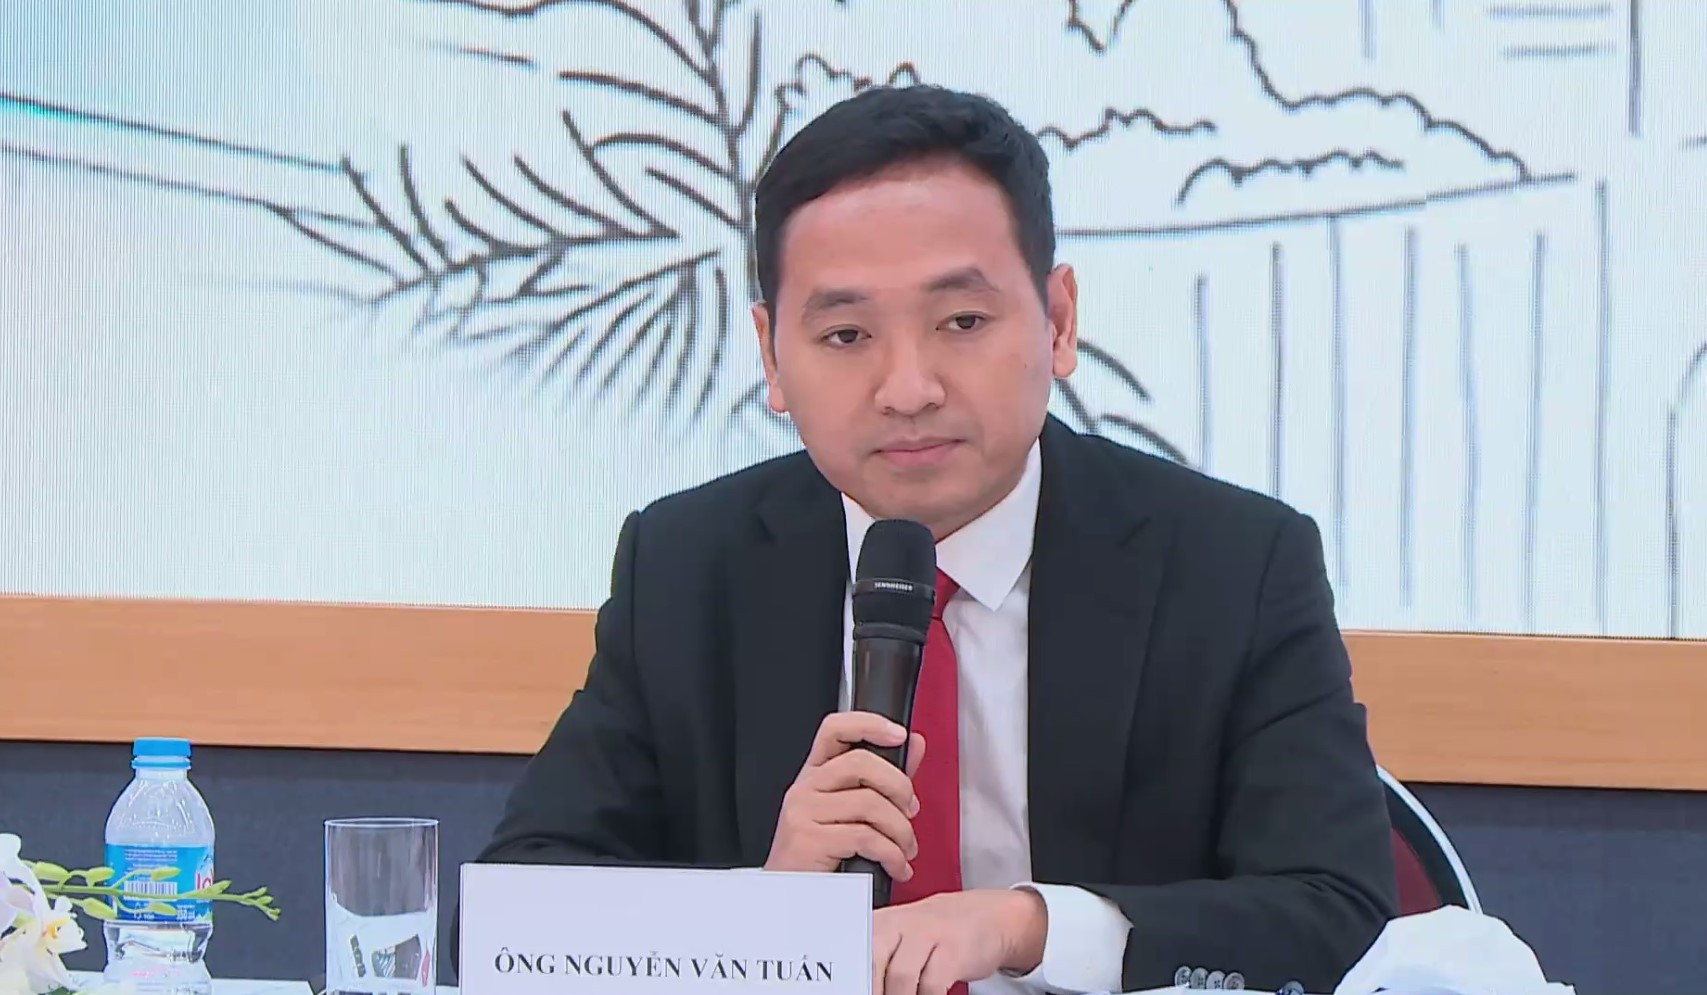 Tài sản ông Nguyễn Văn Tuấn - Tổng giám đốc Công ty CP Gelex (mã CK: GEX) giảm hơn 320 tỷ đồng trong phiên 7/9